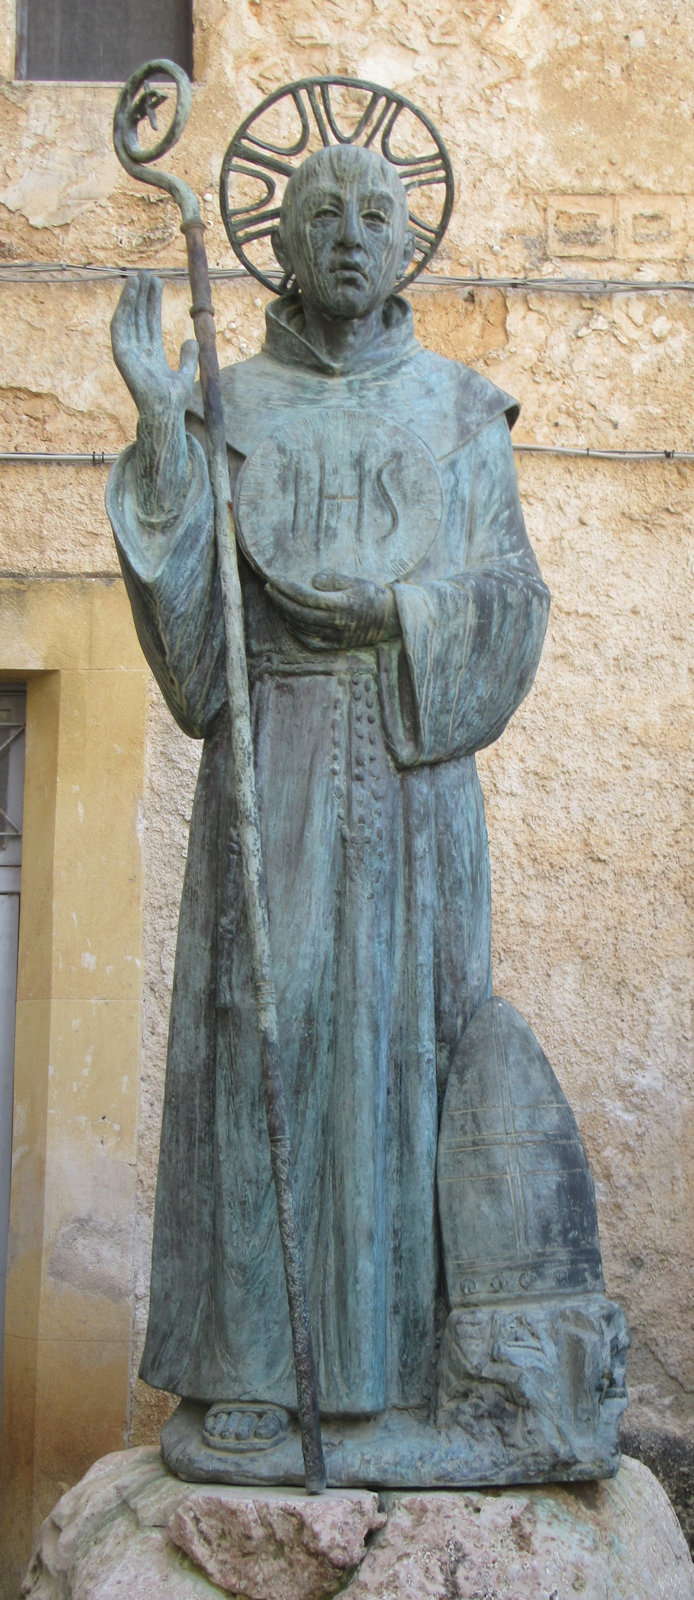 Statue vor dem Kloster Santa Maria di Gesù in Palermo